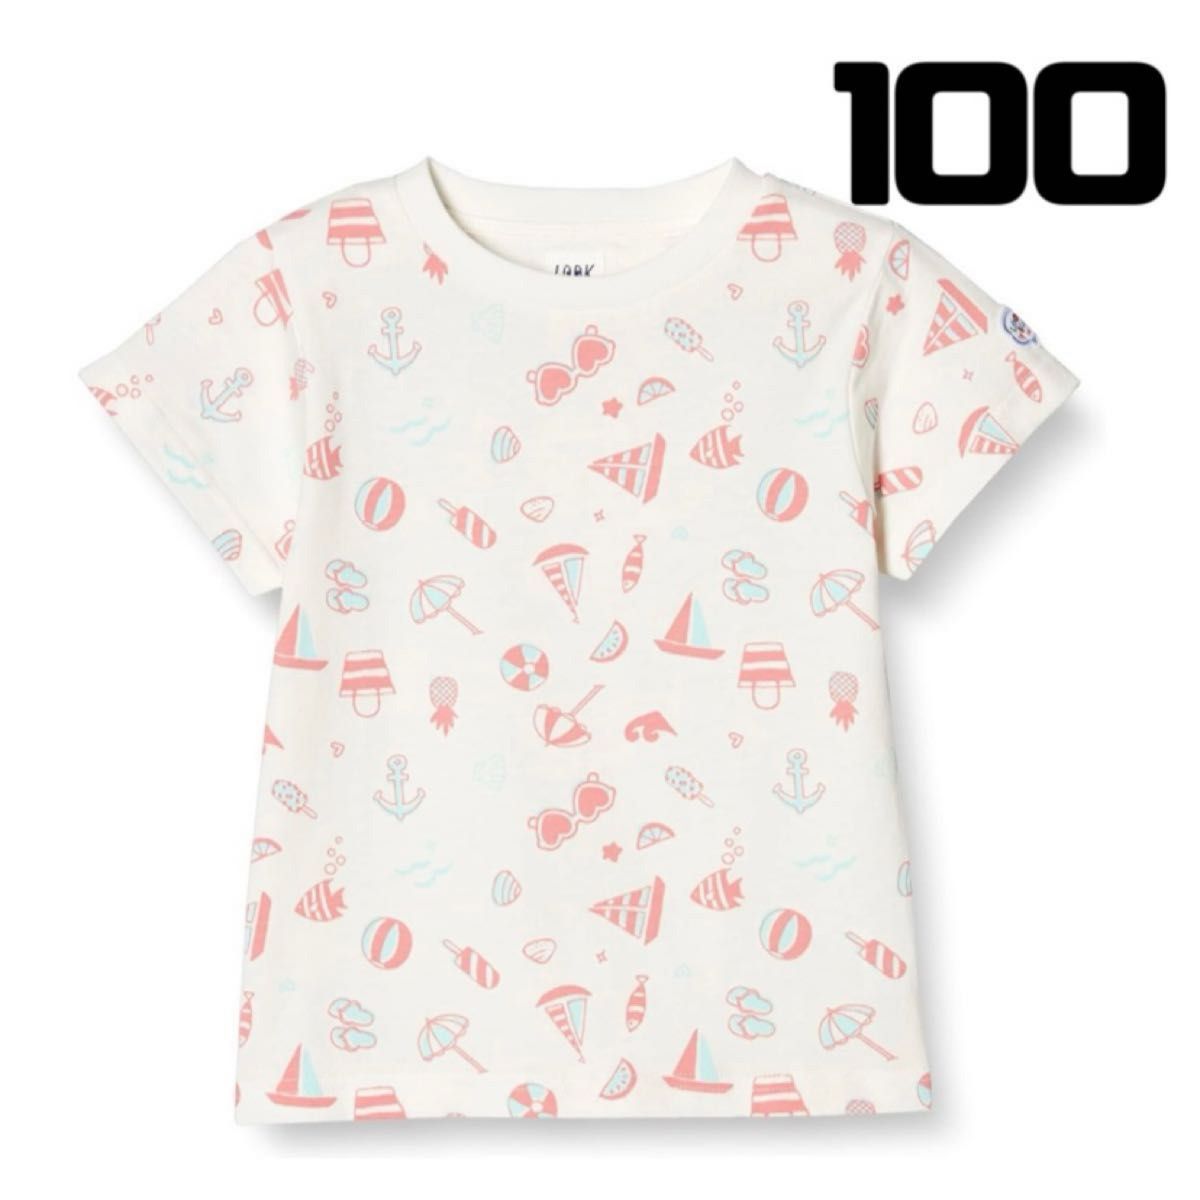 Tシャツ 総柄プリントカットソー ガールズ 100 オフホワイト